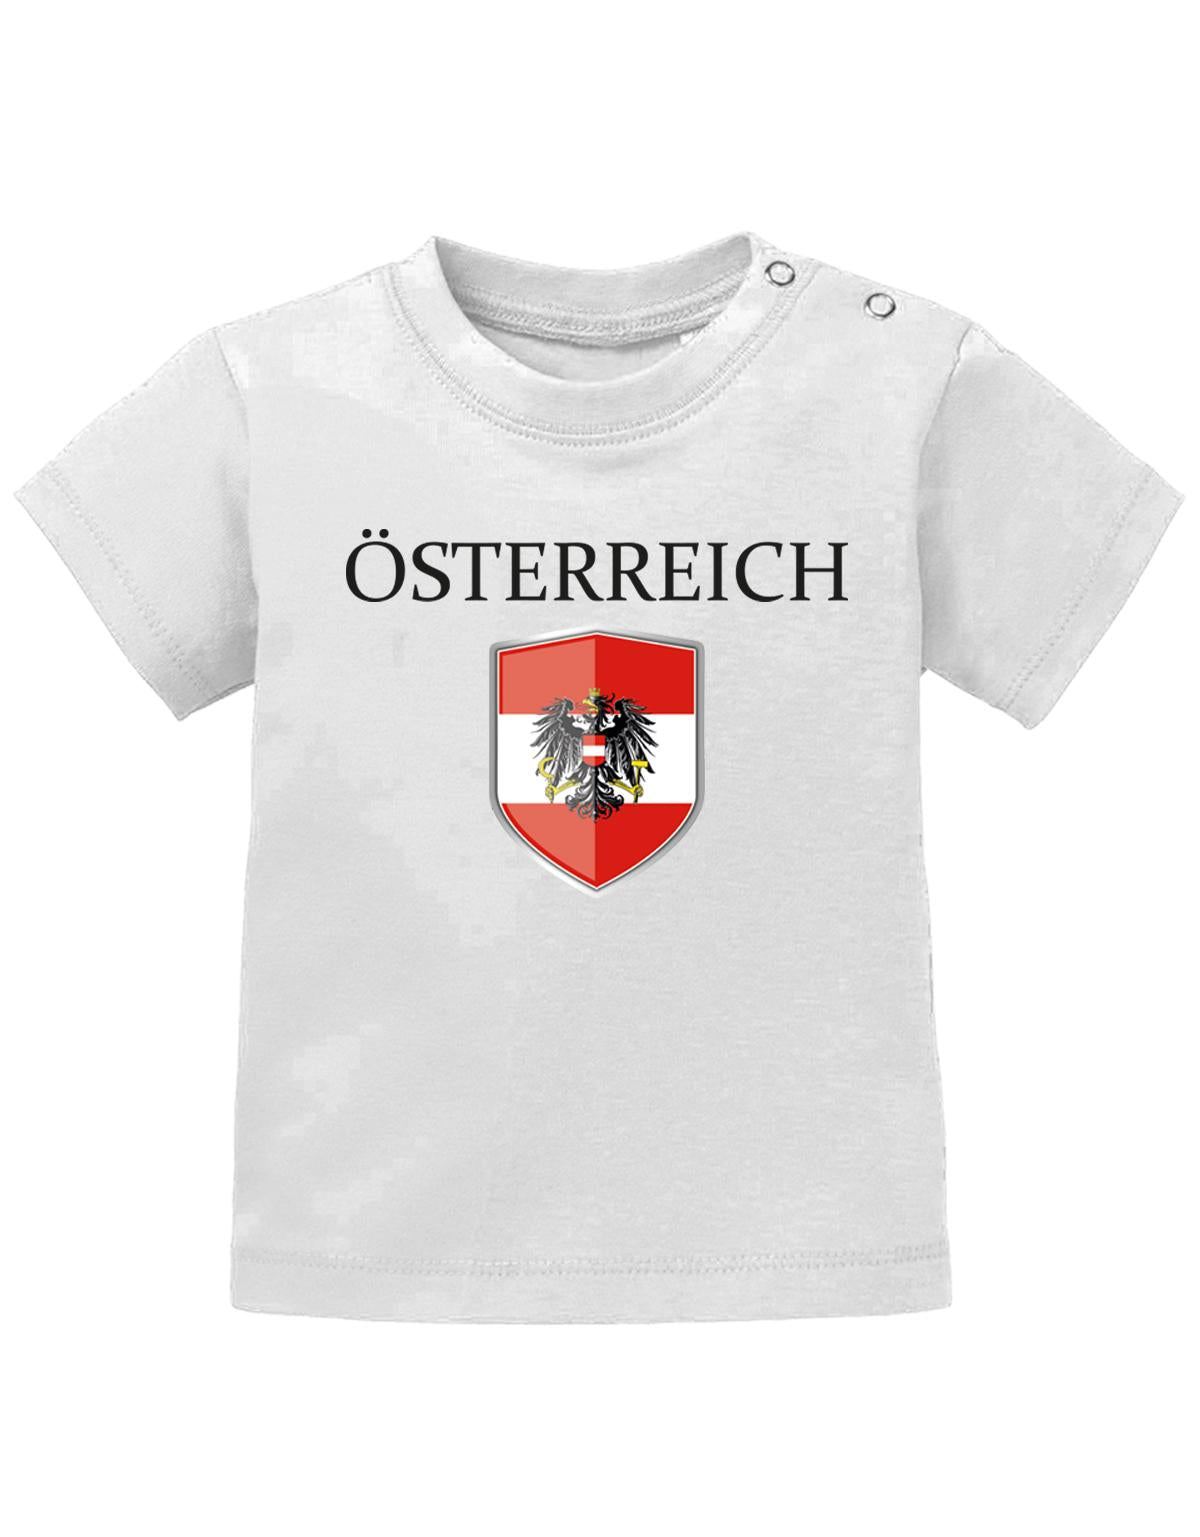 Österreich T Shirt für Junge und Mädchen. Österreich Wappen mit Österreich als Schriftzug. Weiss